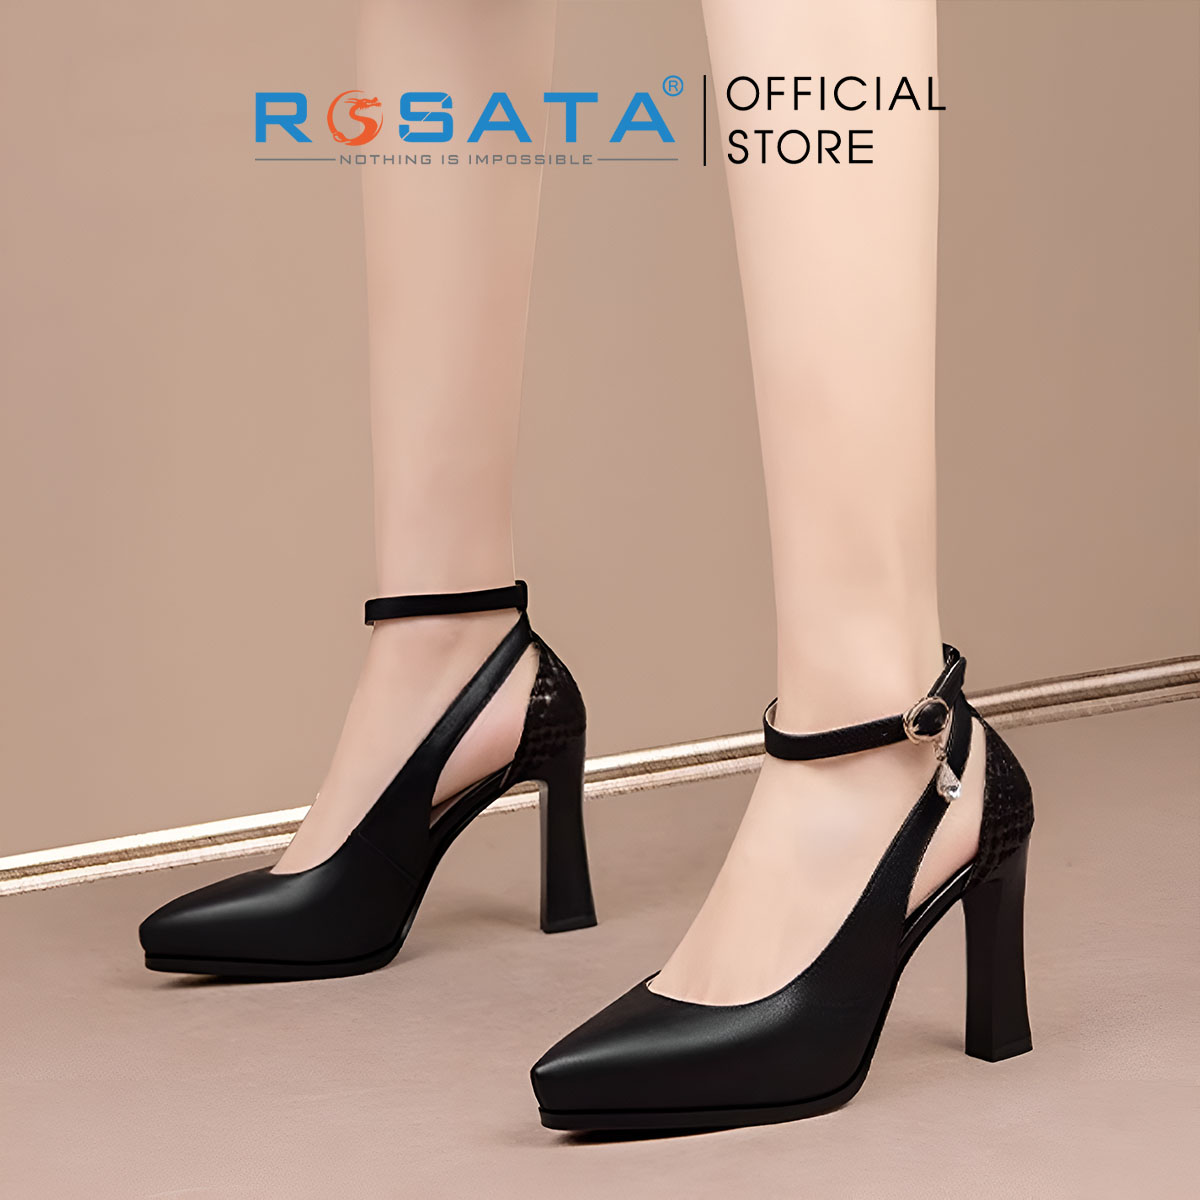 Giày nữ quai cài họa tiết sau gót ROSATA RO616 - 8p - Đen,Trắng - HÀNG VIỆT NAM - BKSTORE